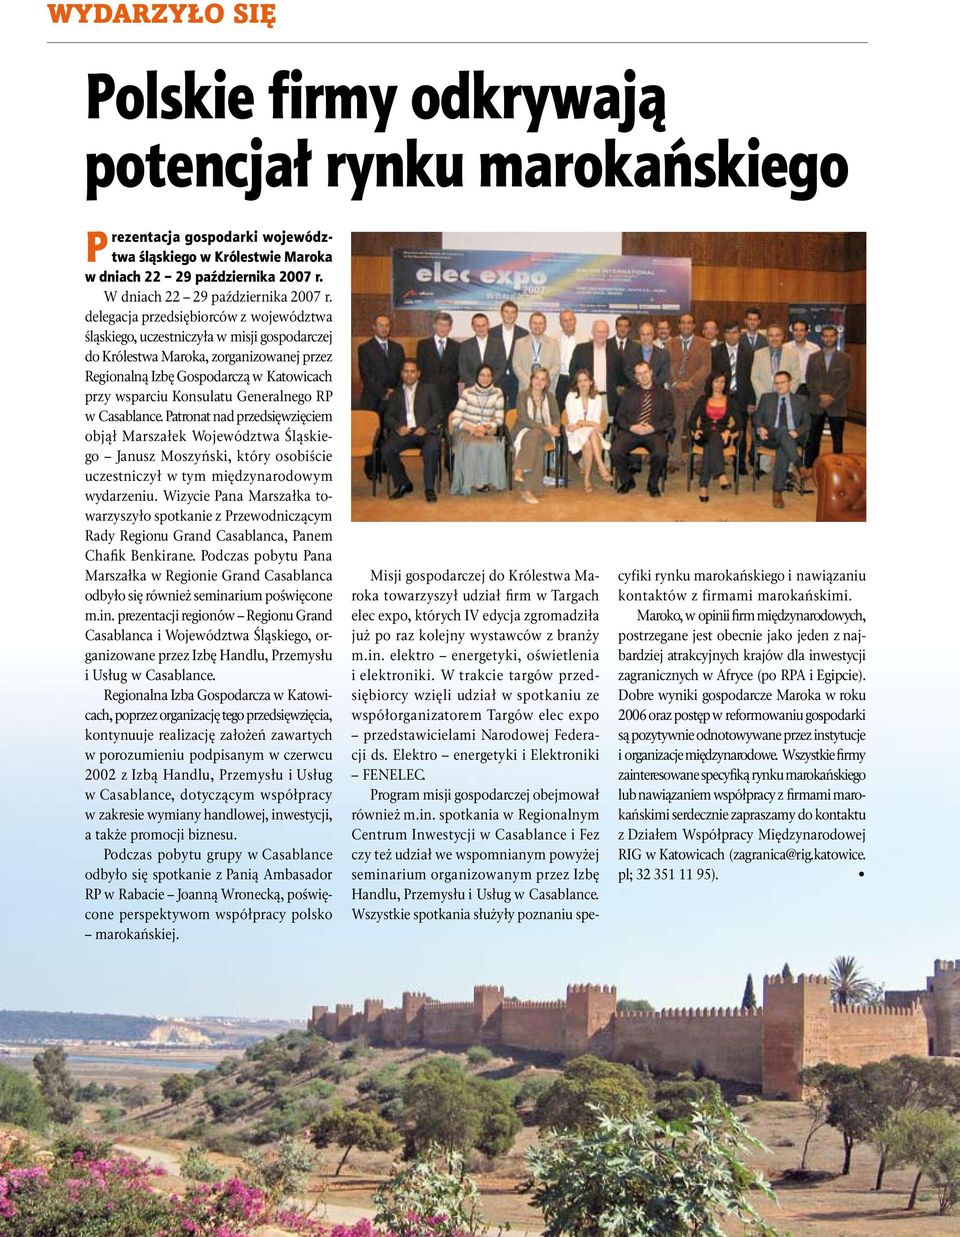 delegacja przedsiębiorców z województwa śląskiego, uczestniczyła w misji gospodarczej do Królestwa Maroka, zorganizowanej przez Regionalną Izbę Gospodarczą w Katowicach przy wsparciu Konsulatu